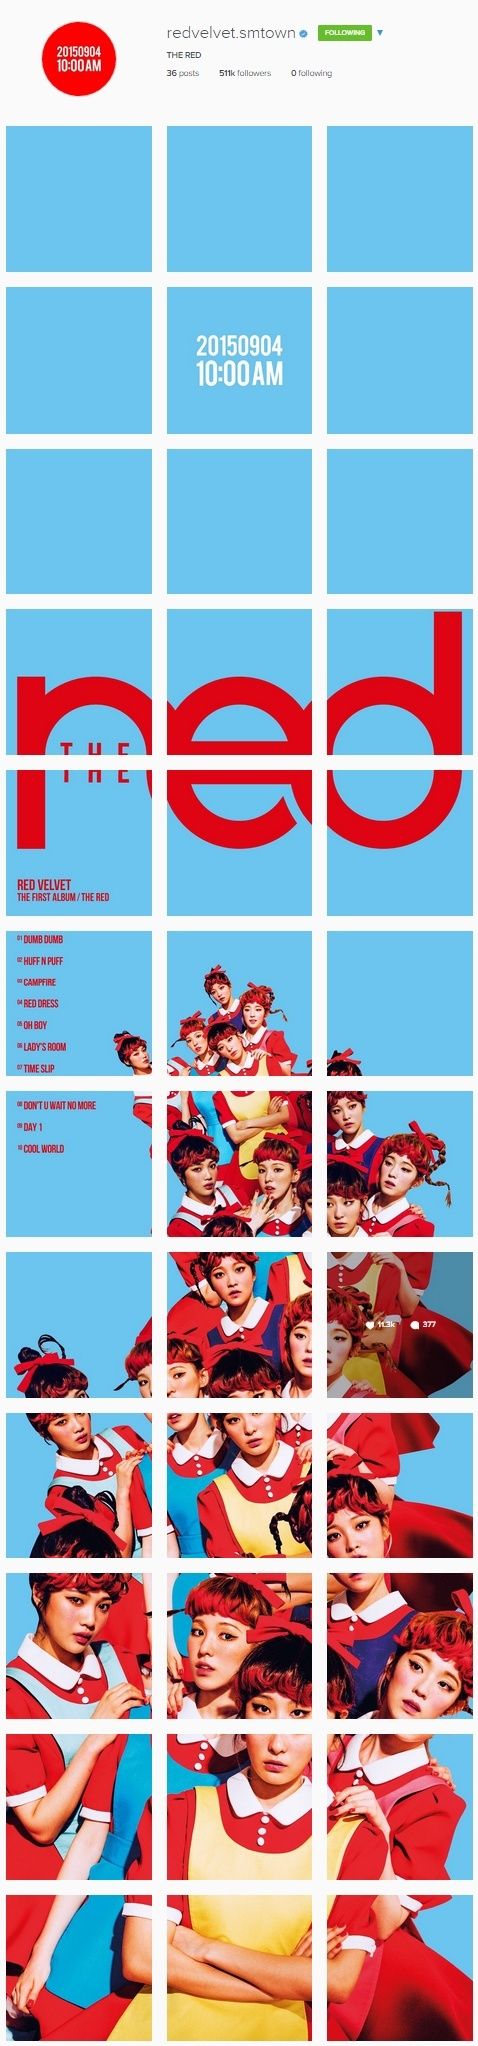 Red Velvet's Official Instagram